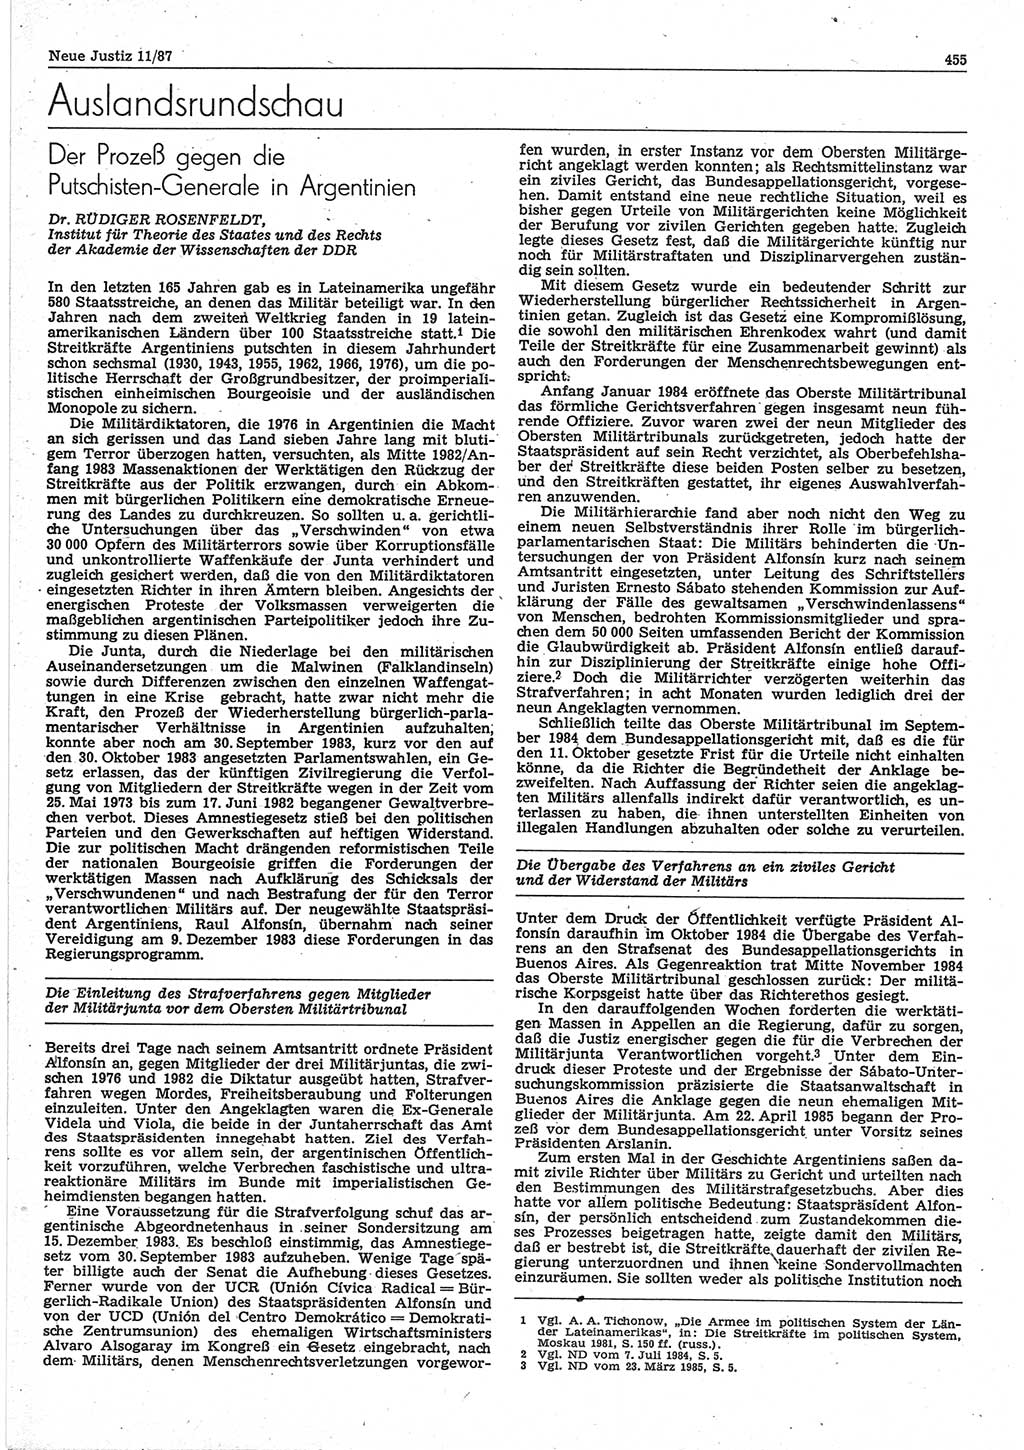 Neue Justiz (NJ), Zeitschrift für sozialistisches Recht und Gesetzlichkeit [Deutsche Demokratische Republik (DDR)], 41. Jahrgang 1987, Seite 455 (NJ DDR 1987, S. 455)